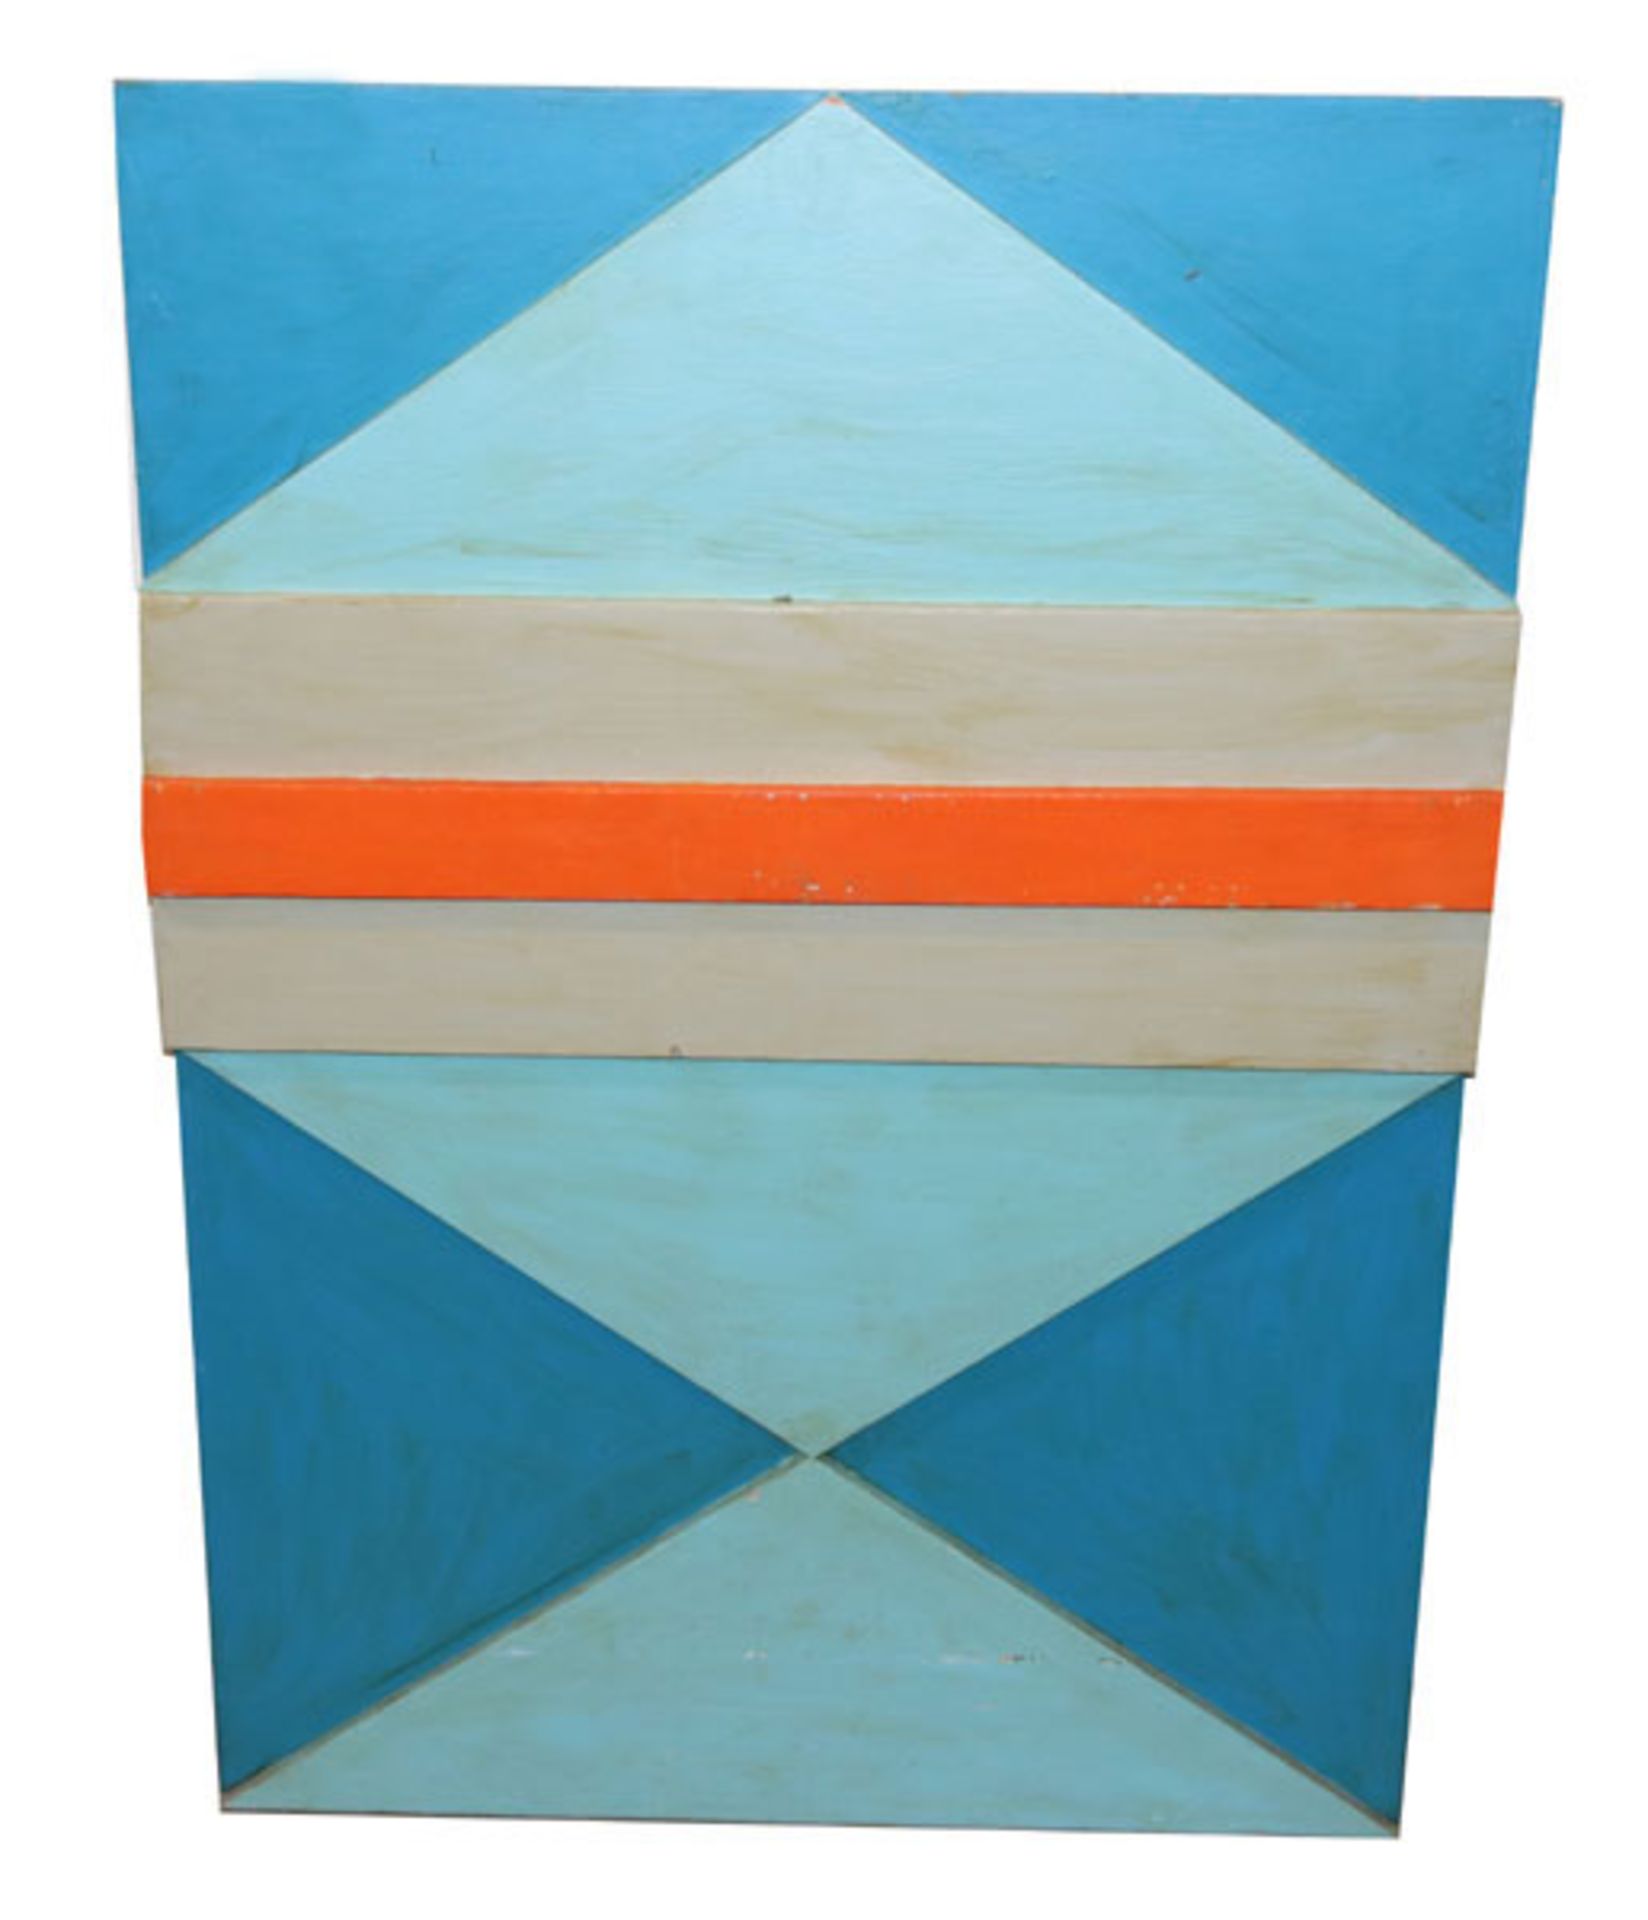 Holzobjekt 'Blau/grau und Orange', rückseitig bez. Rudolf Härtl, 2005, * 1930 München - lebt in